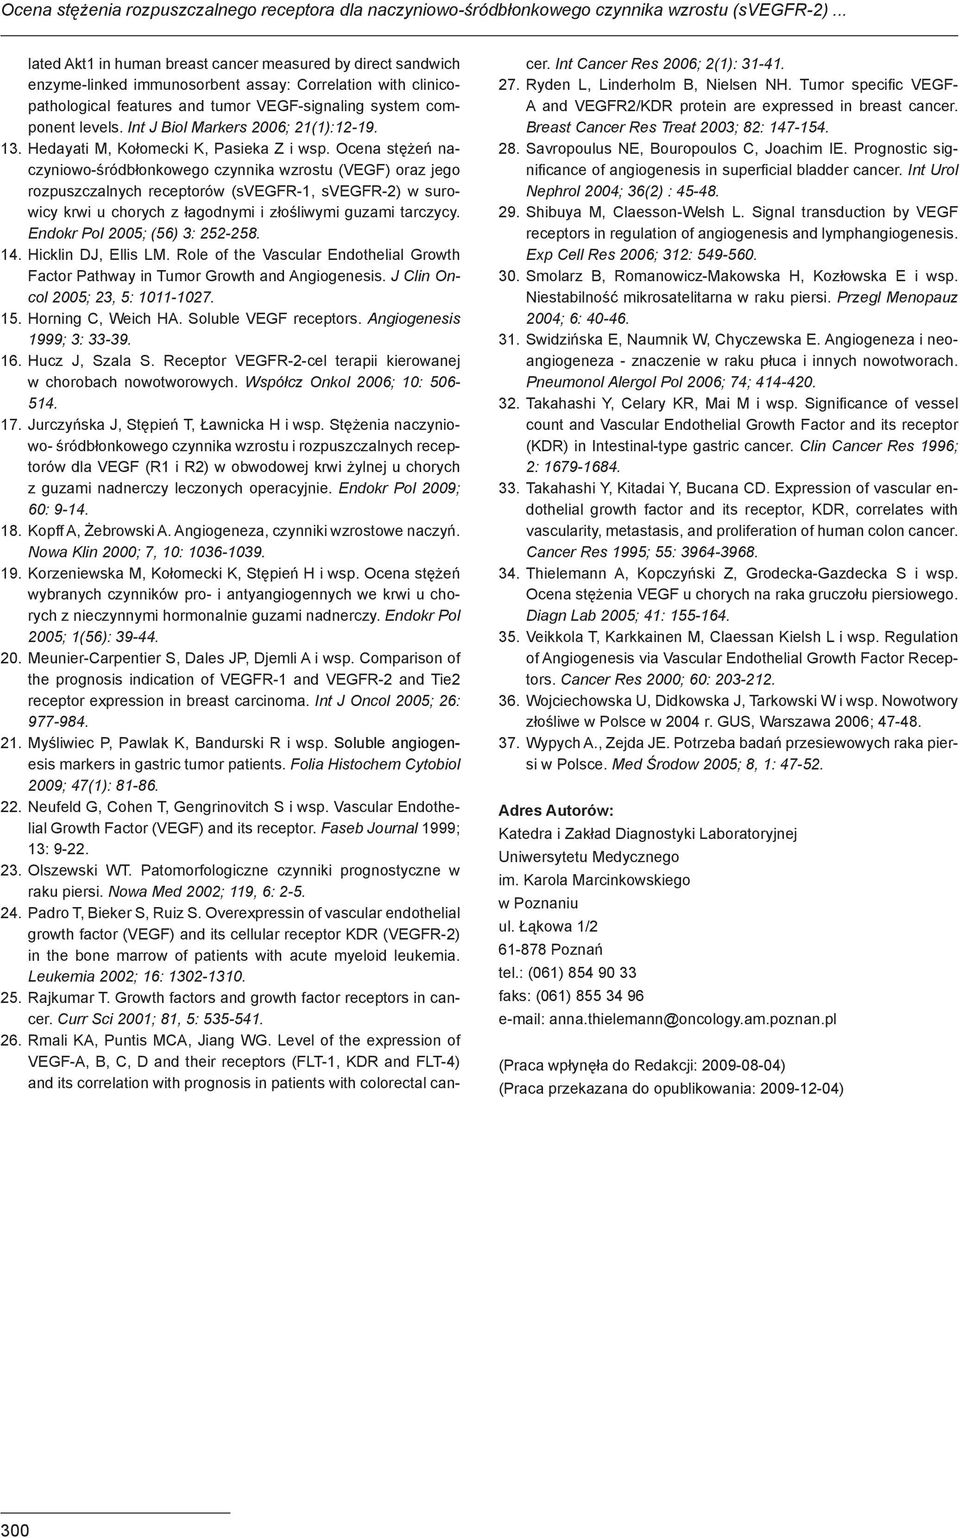 Int J Biol Markers 2006; 21(1):12-19. 13. Hedayati M, Kołomecki K, Pasieka Z i wsp.